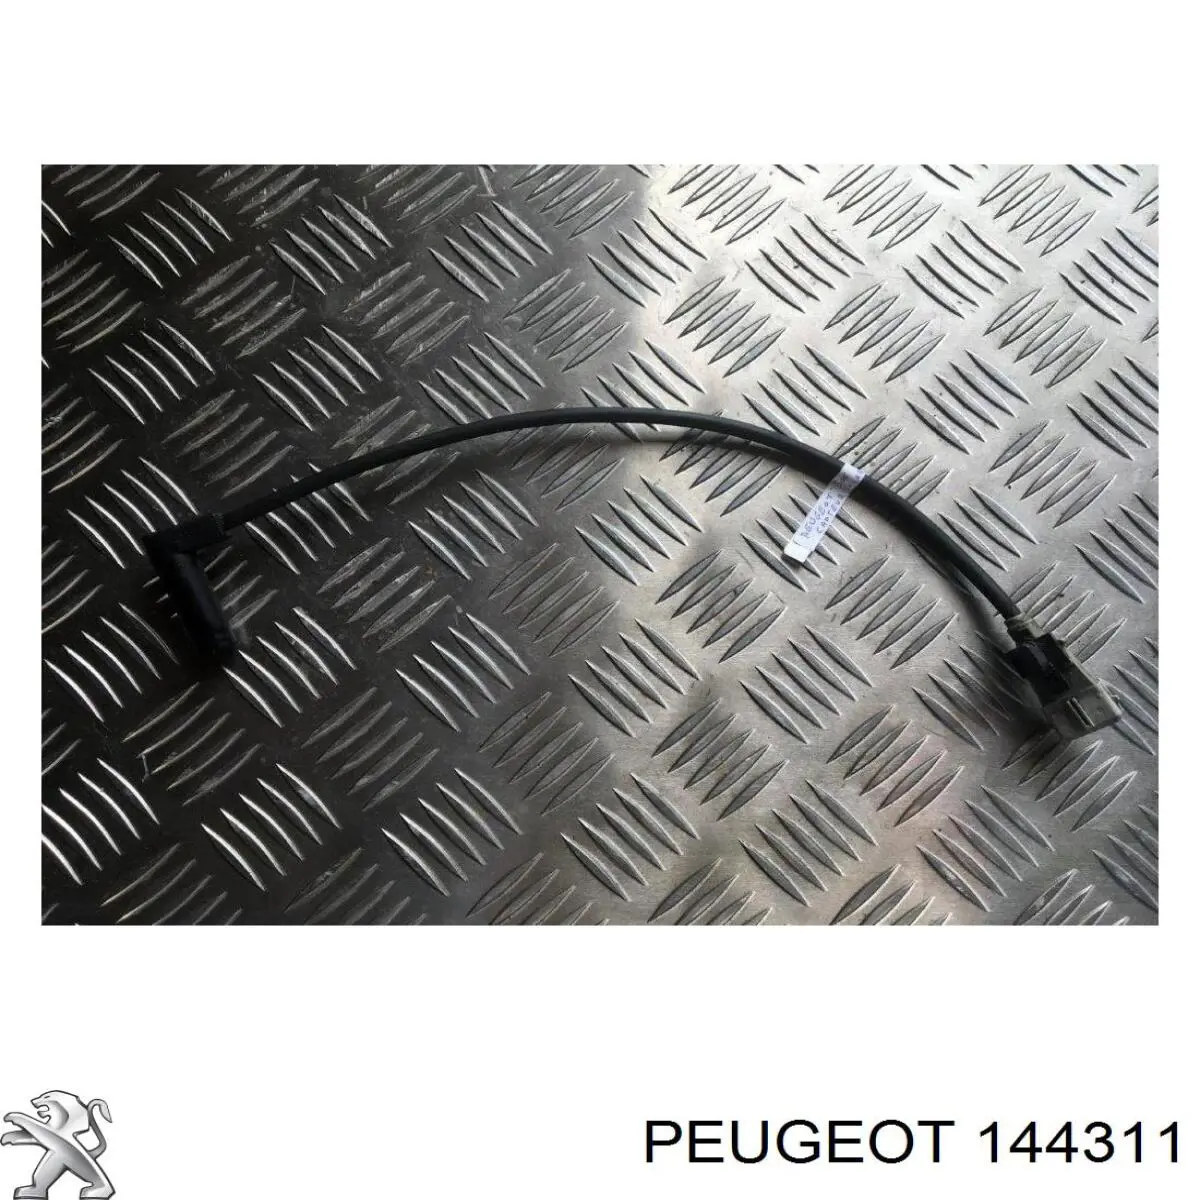 144311 Peugeot/Citroen sensor de cigüeñal